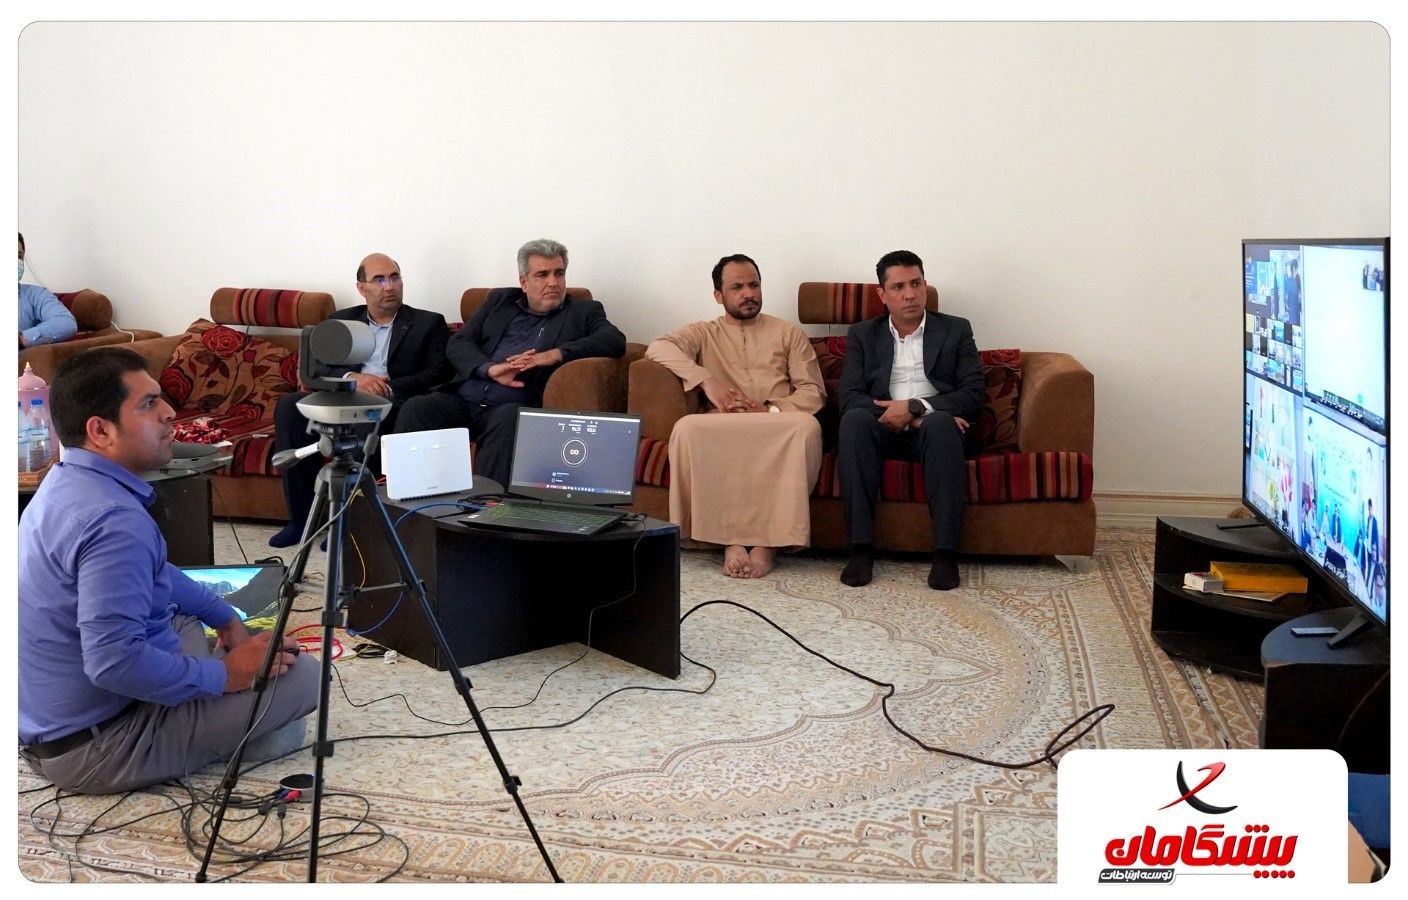 افتتاح پروژه ملی اینترنت فیبر نوری پیشگامان در بندر چارک با حضور رئیس جمهور